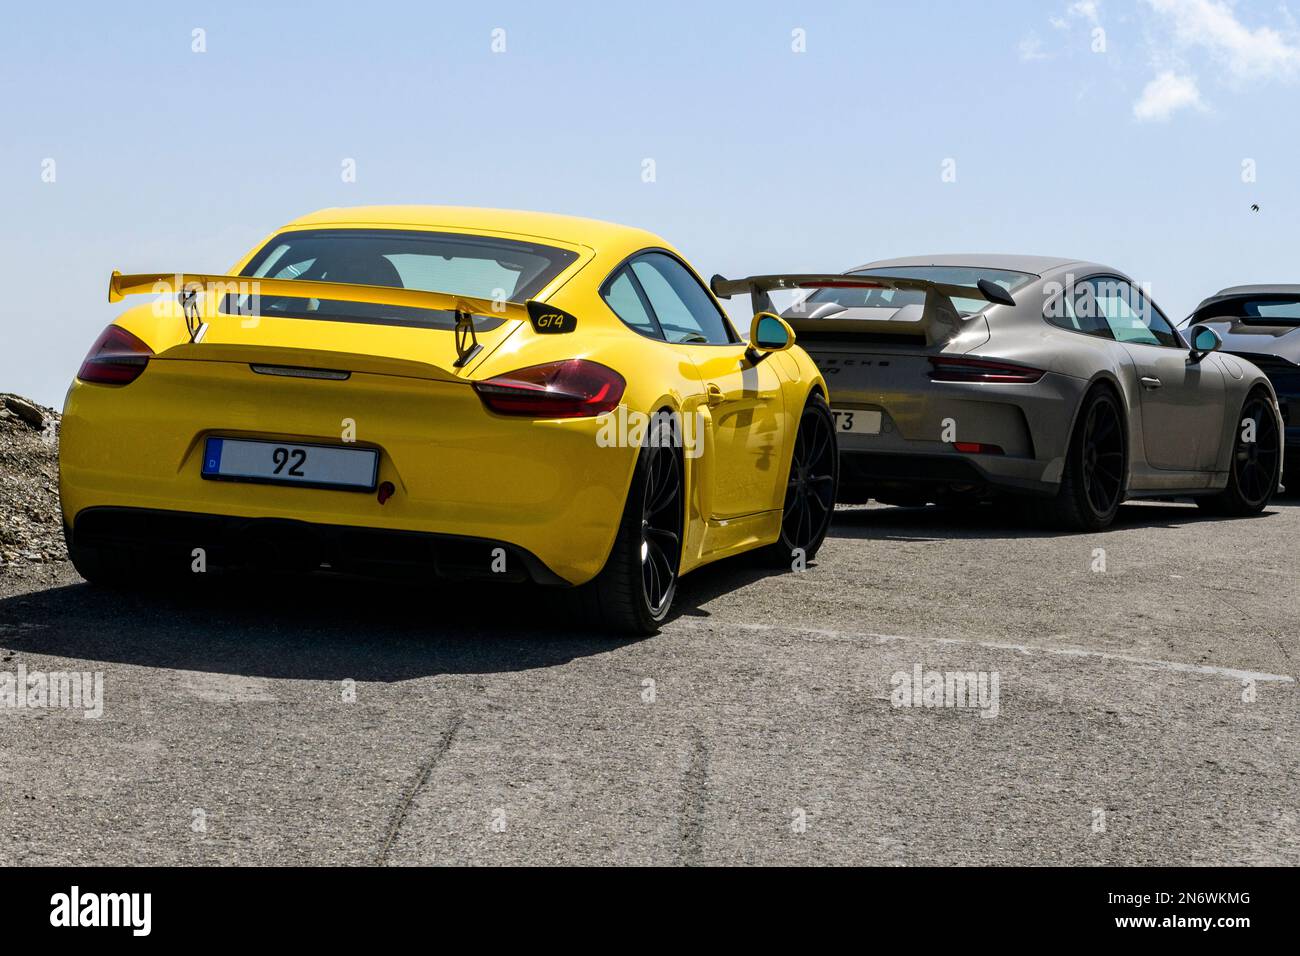 Vorne Sportwagen gelber Porsche Cayman GT4 mit Heckflügel Spoiler dahinter Porsche 911 GT3 mit Heckspoiler, Cime de la Bonette, Alpen, Frankreich Stockfoto